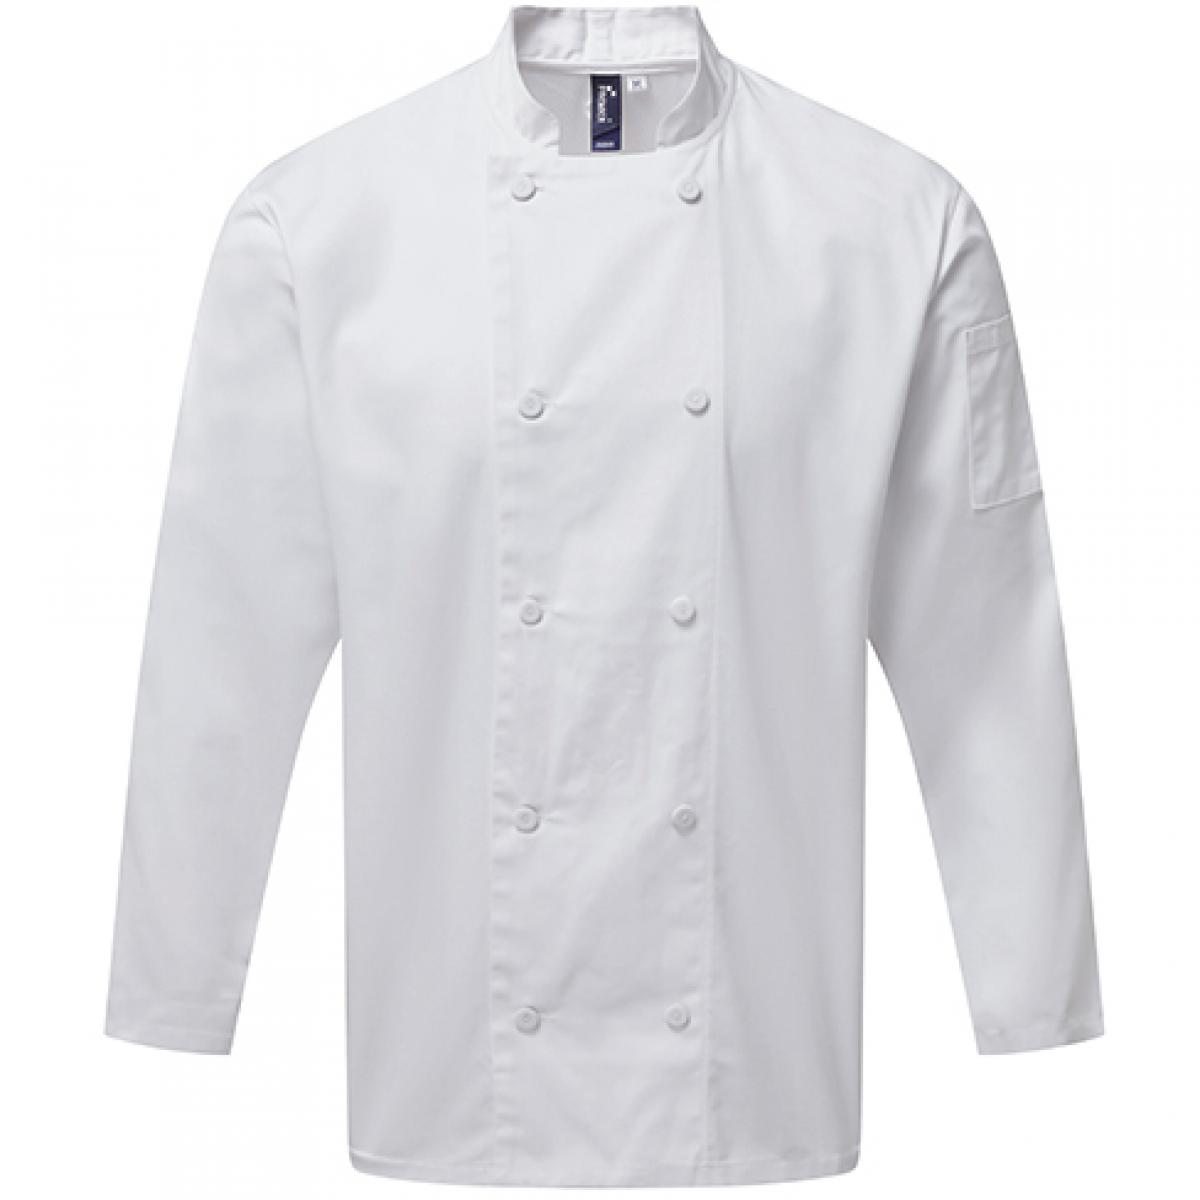 Hersteller: Premier Workwear Herstellernummer: PR903 Artikelbezeichnung: Kochjacke Chefs Long Sleeve Coolchecker® Jacket Farbe: White